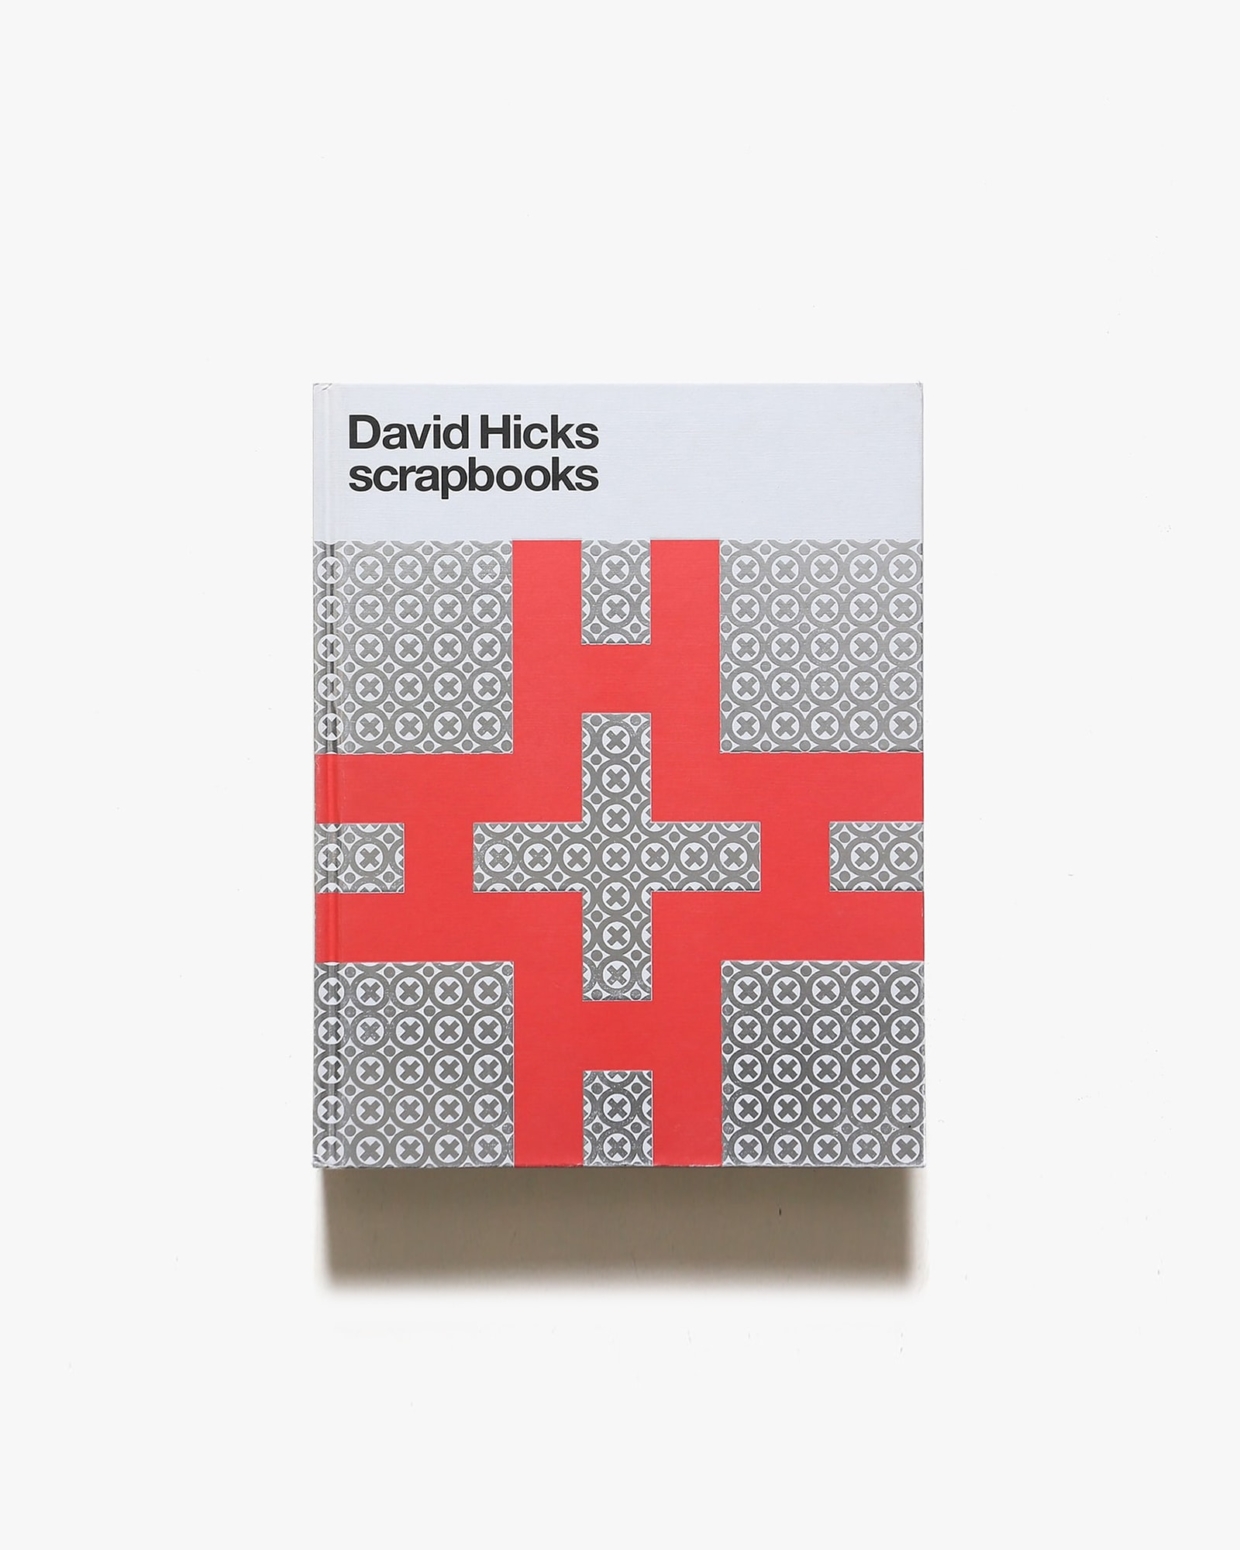 David Hicks Scrapbooks | デイビット・ヒックス